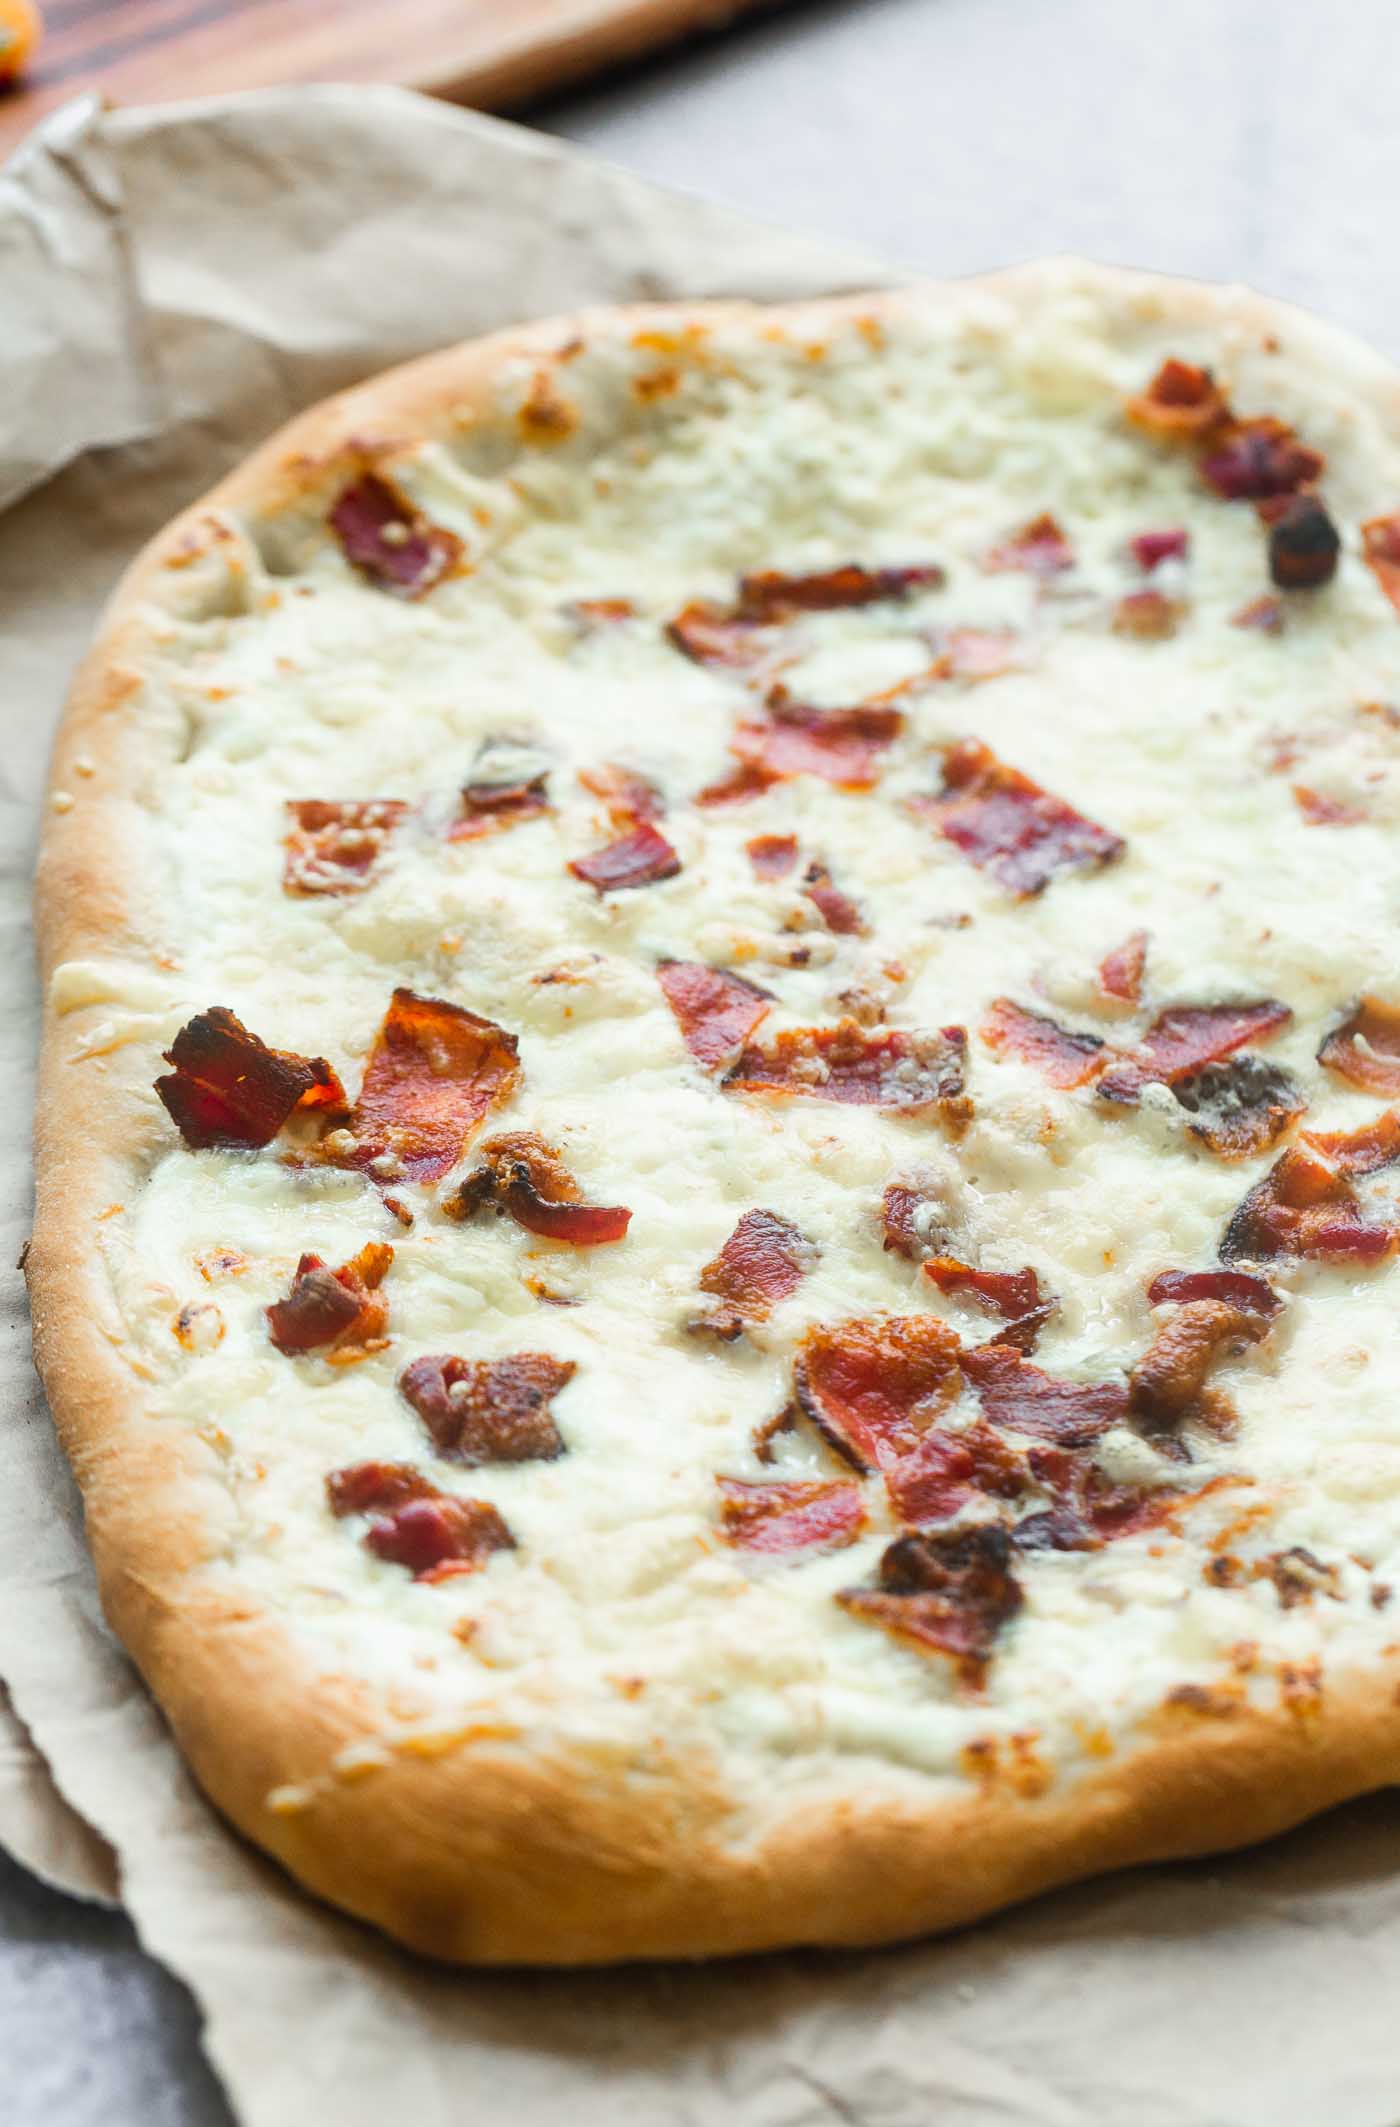 Ricotta, Bacon and Tomato Pizza